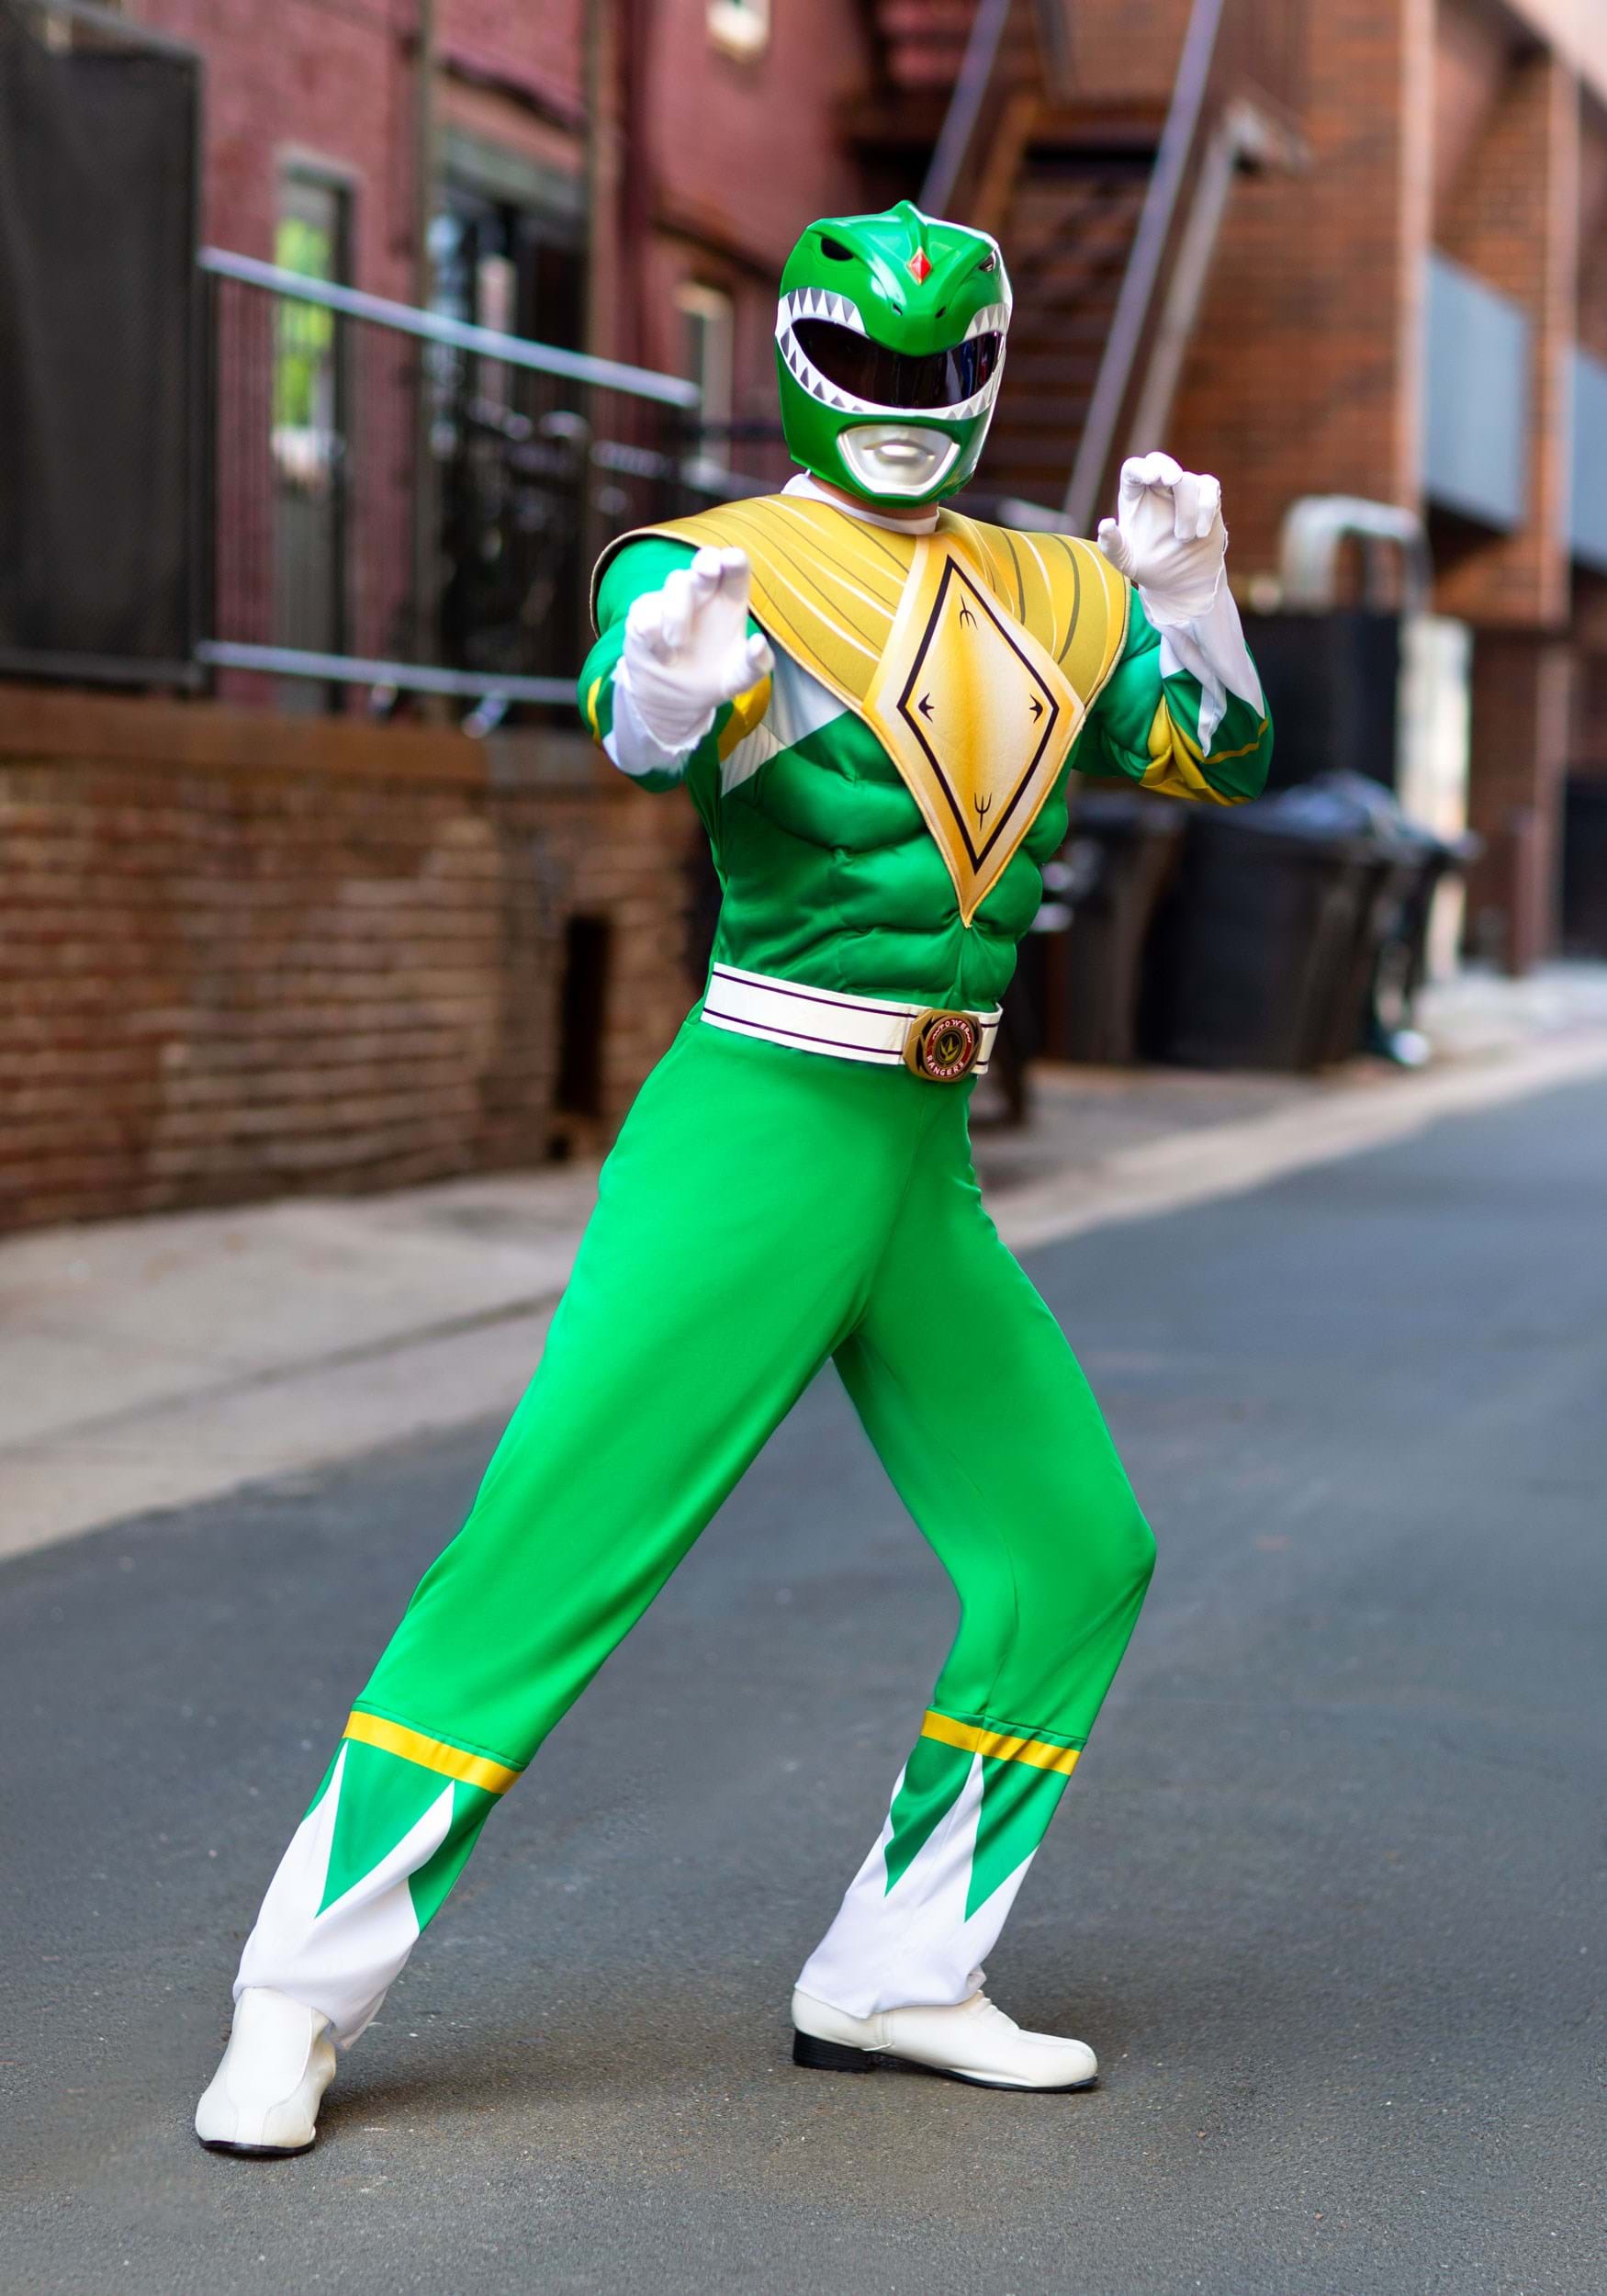 Green ranger costume